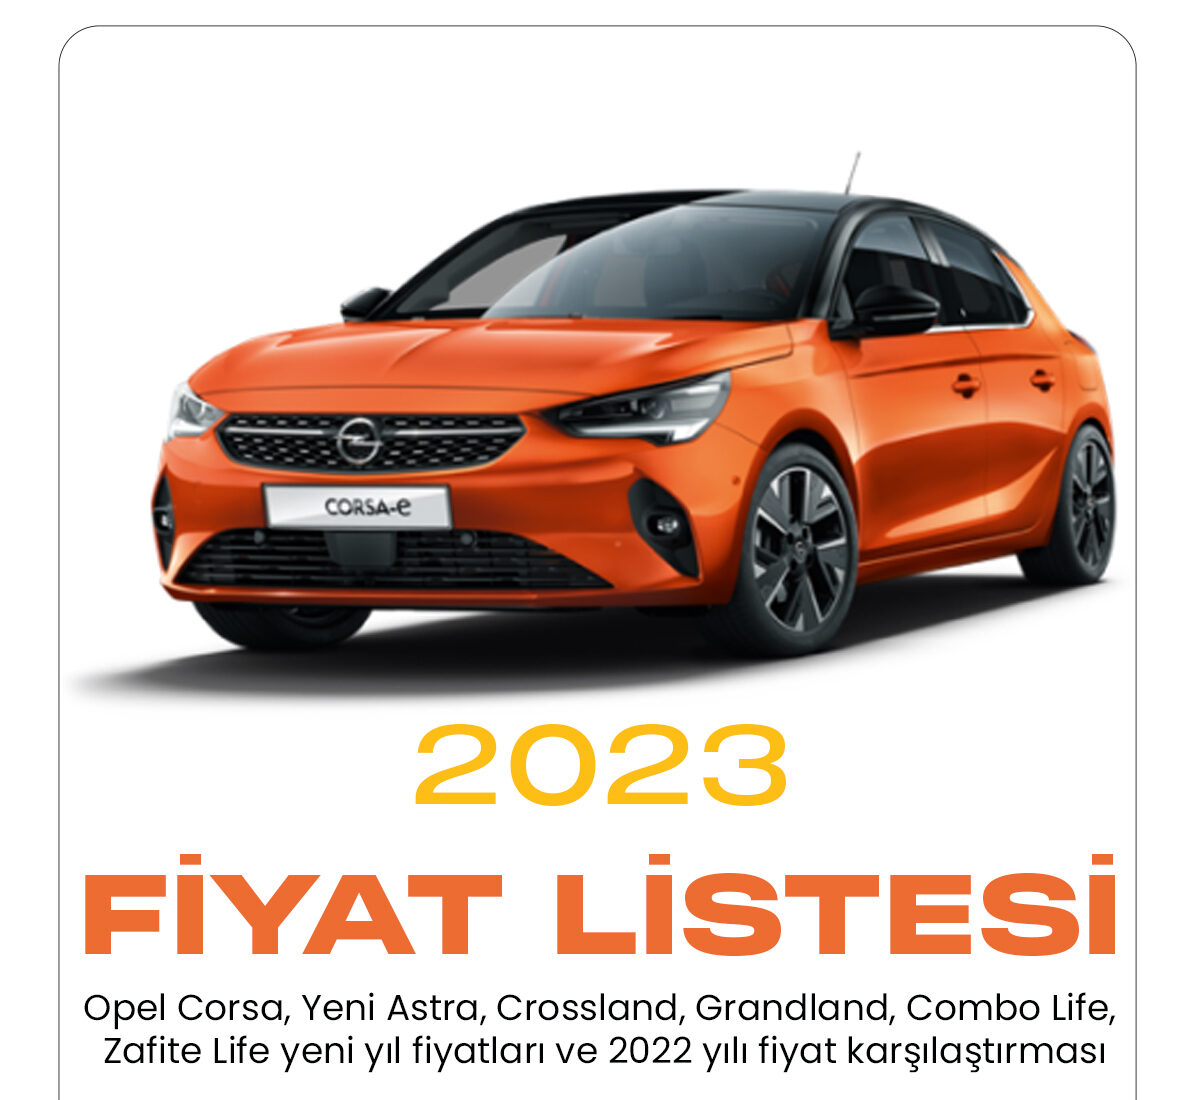 Opel Ocak fiyat listesi yayımlandı. Popüler araç markalarından biri olan Opel 2023 fiyat listesini yayımladı.